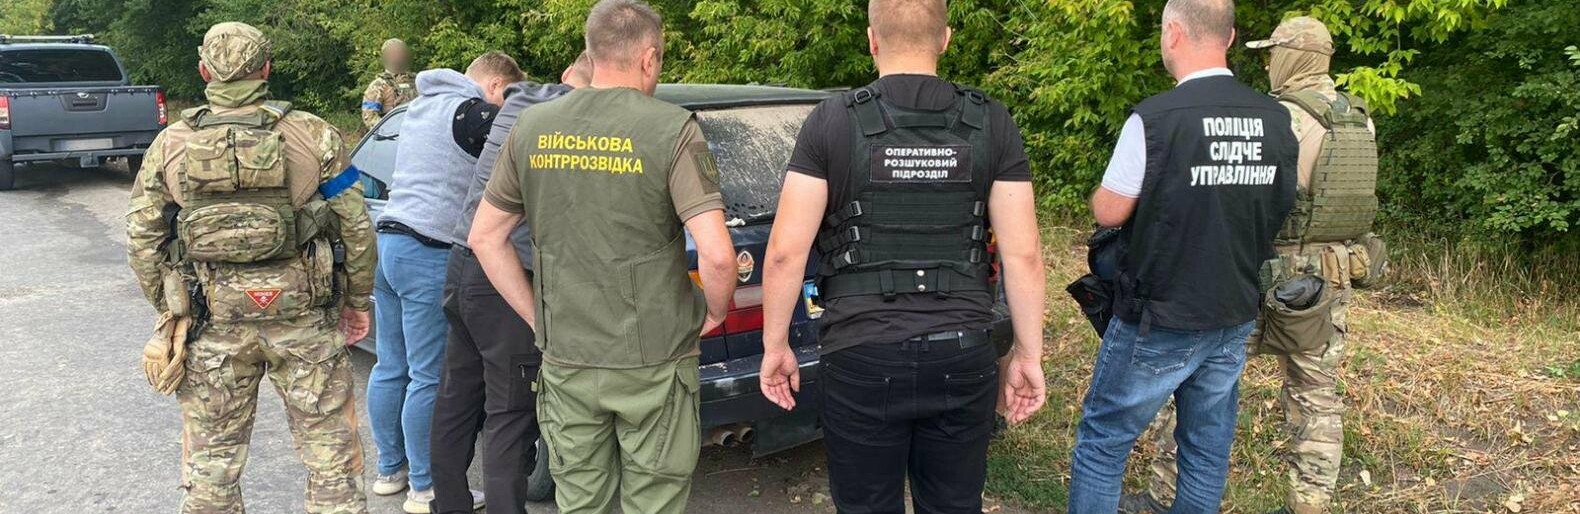 На Буковині затримали двох організторів незаконного трансфера чоловіків поза пунктом пропуску в Молдову